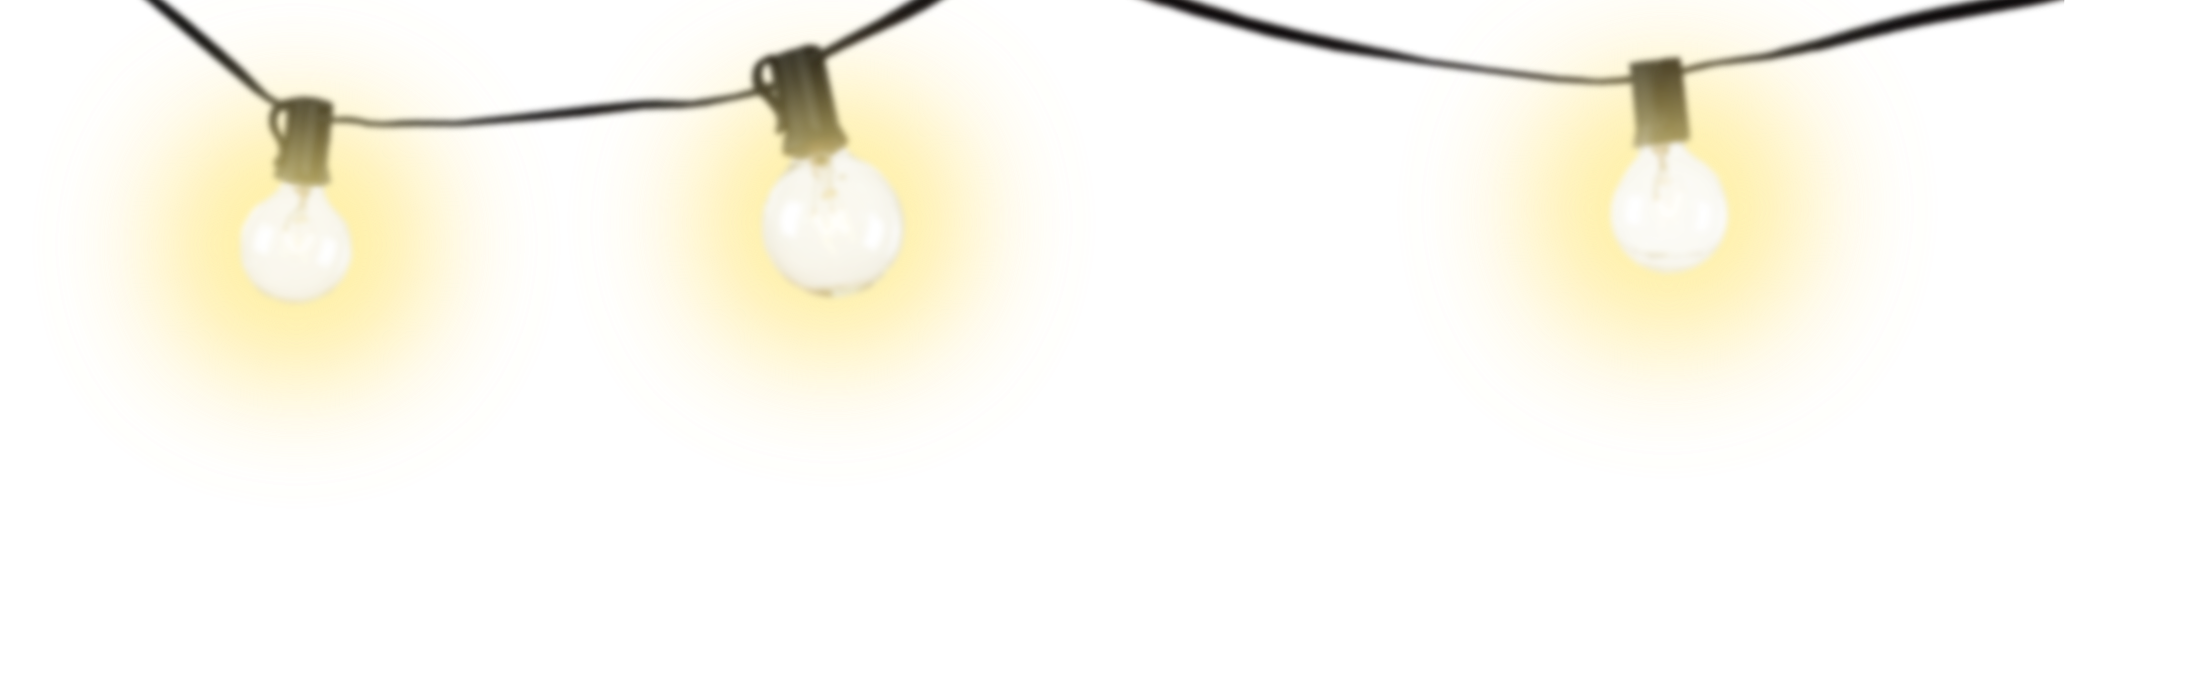 Bola lampu dekoratif PNG Gambar berkualitas tinggi